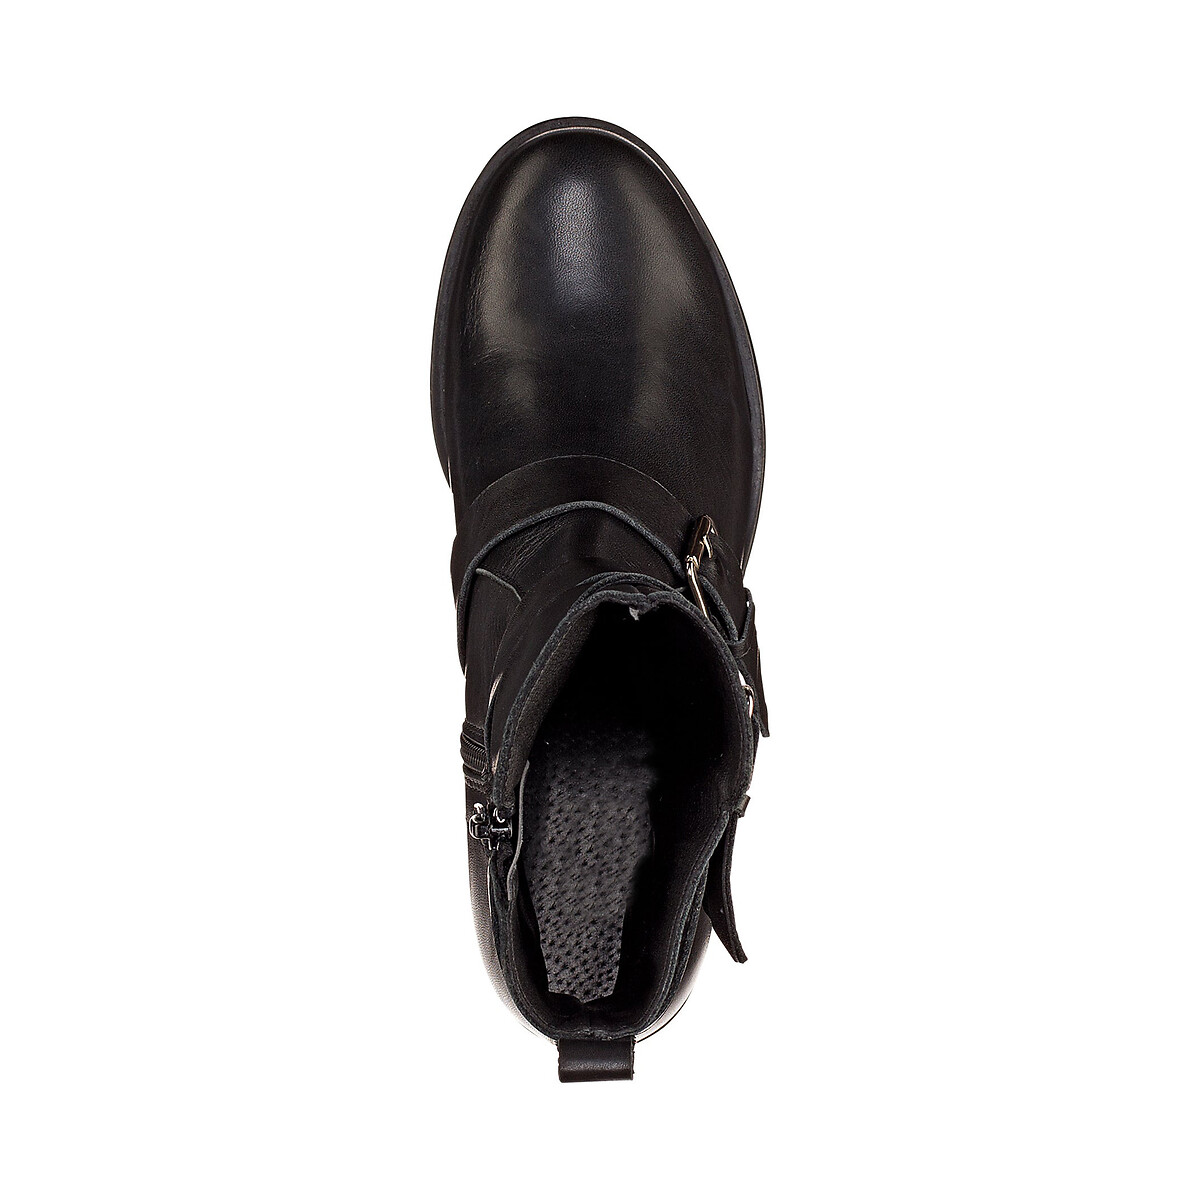 Ботинки La Redoute Кожаные в байкерском стиле 40 черный, размер 40 - фото 3